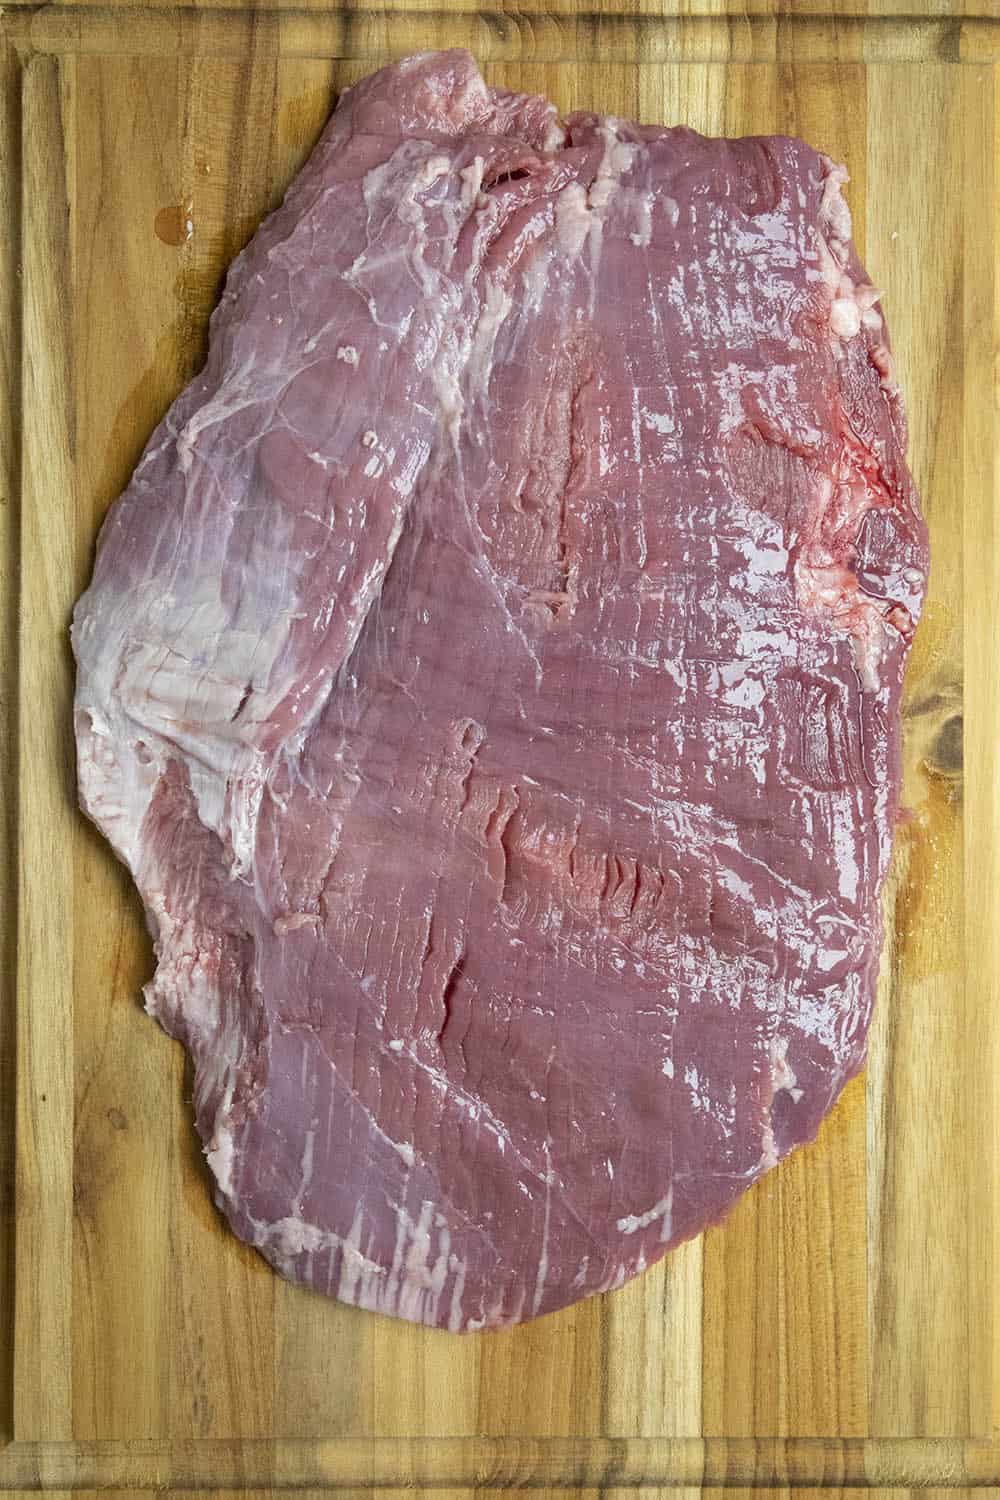 Flank Steak on a cutting board